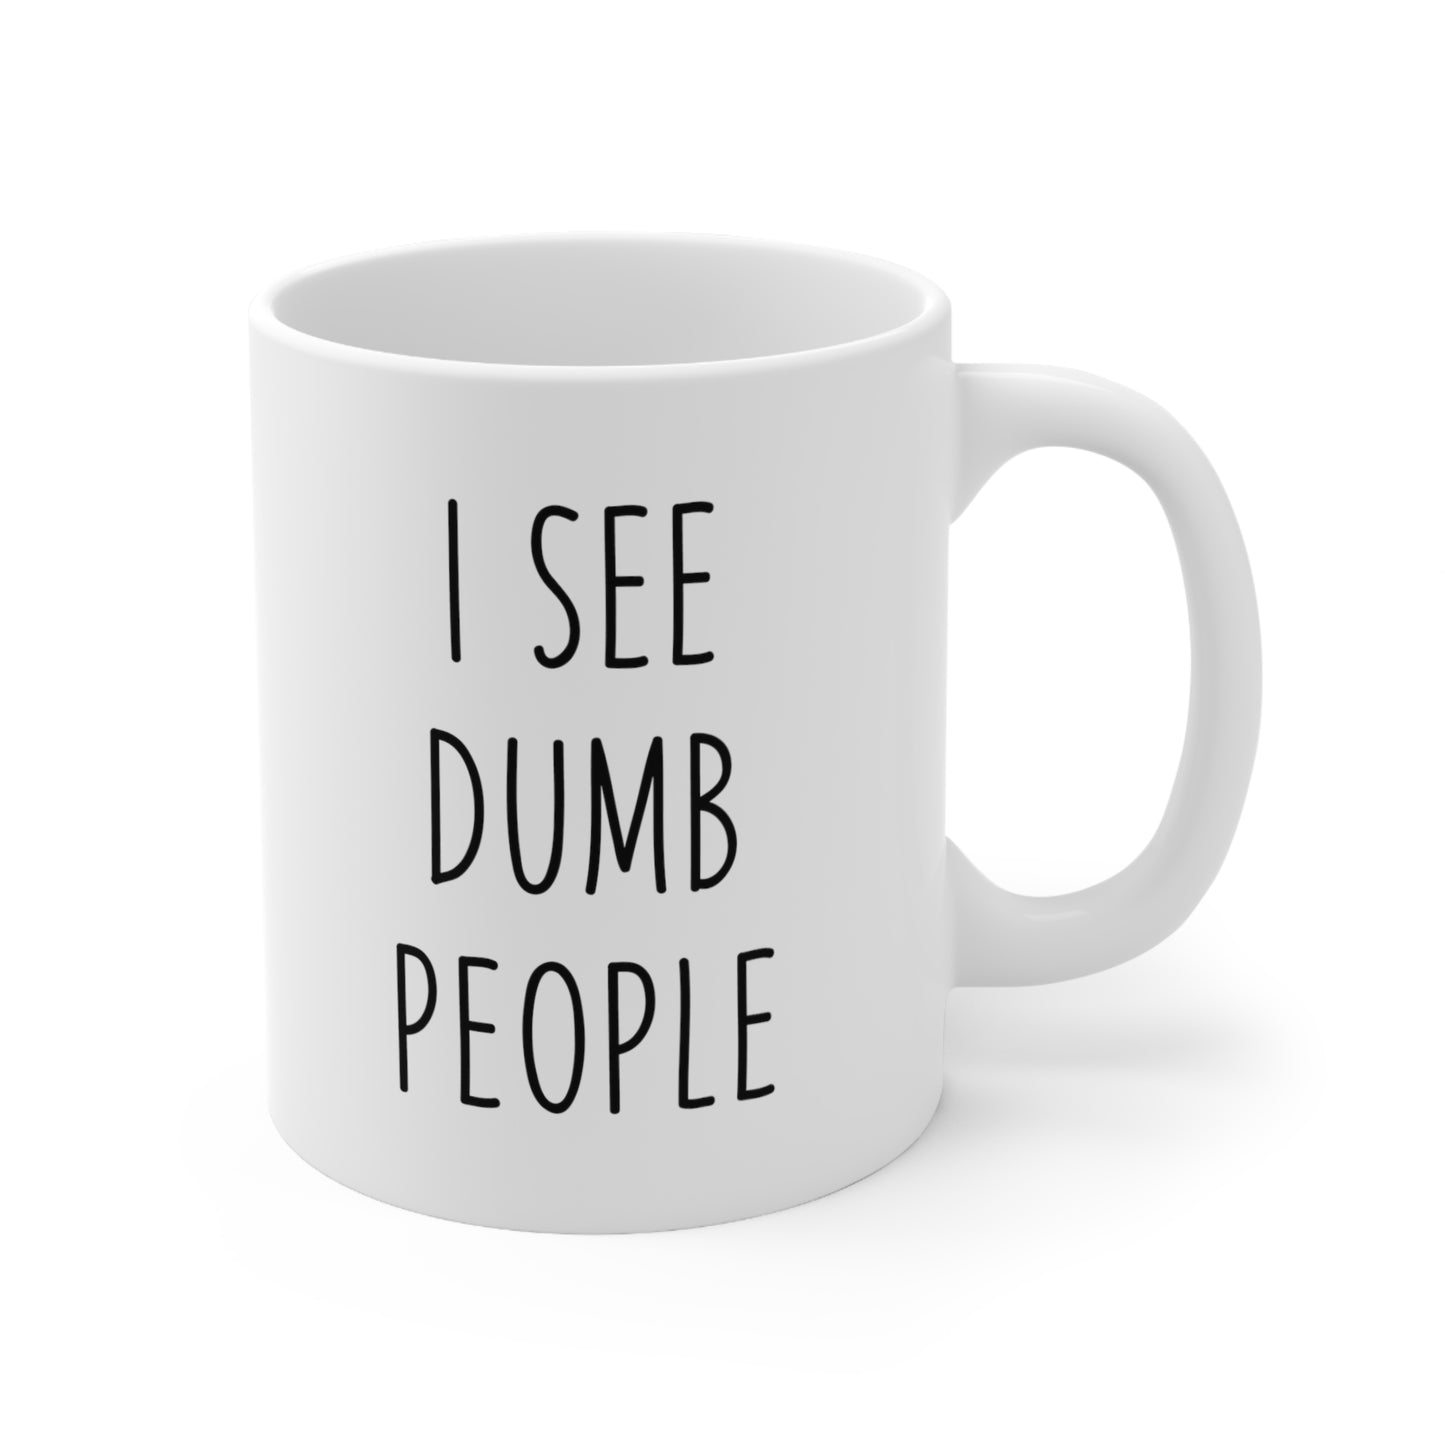 I See Dumb People Coffee Mug 11oz